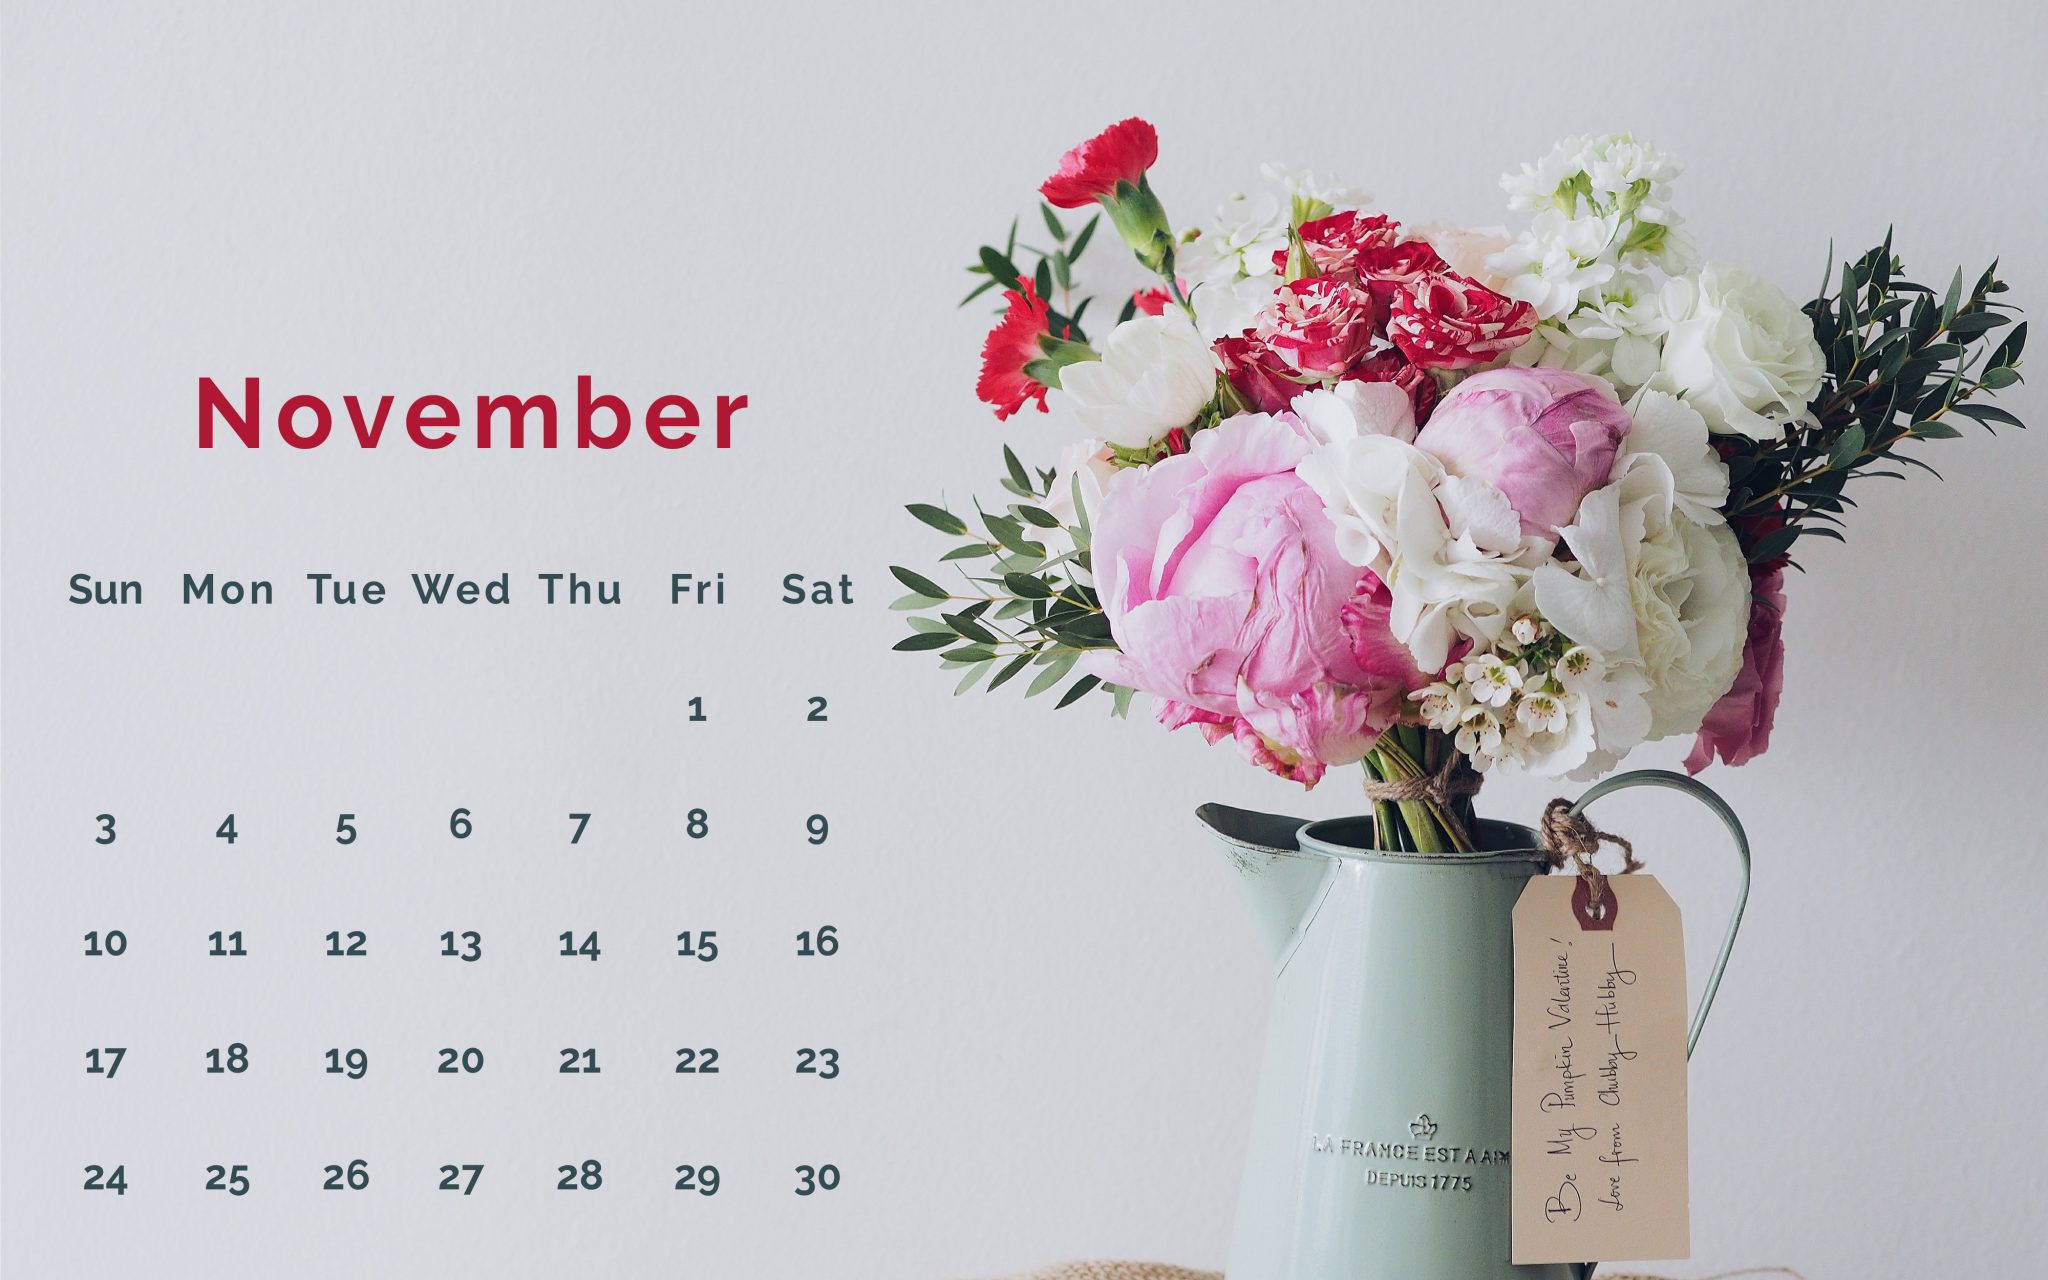 November Background 2019 Calendar - HD Wallpaper 